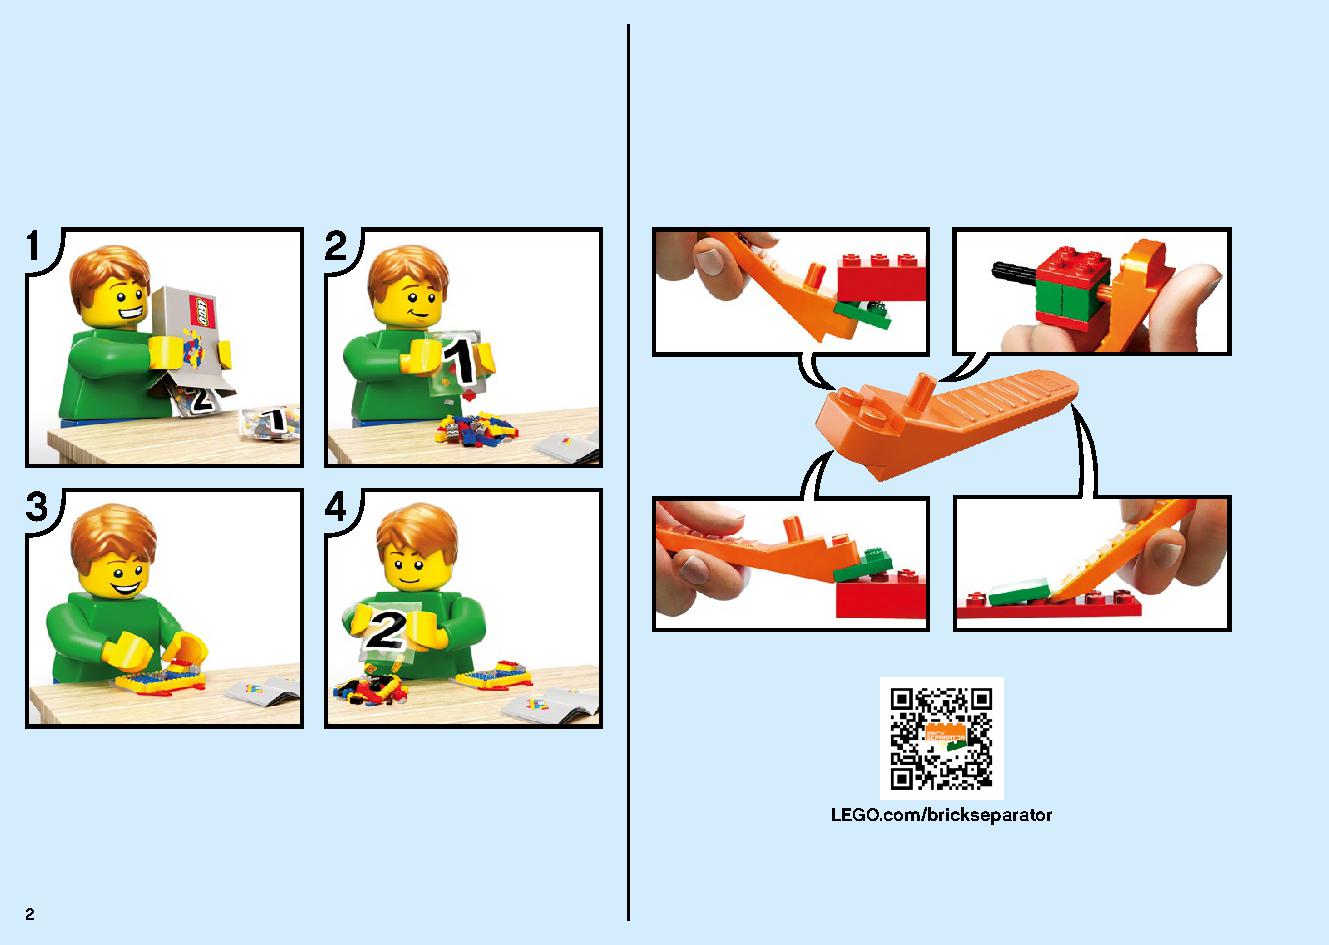 陸上戦艦バウンティ号 70677 レゴの商品情報 レゴの説明書・組立方法 2 page